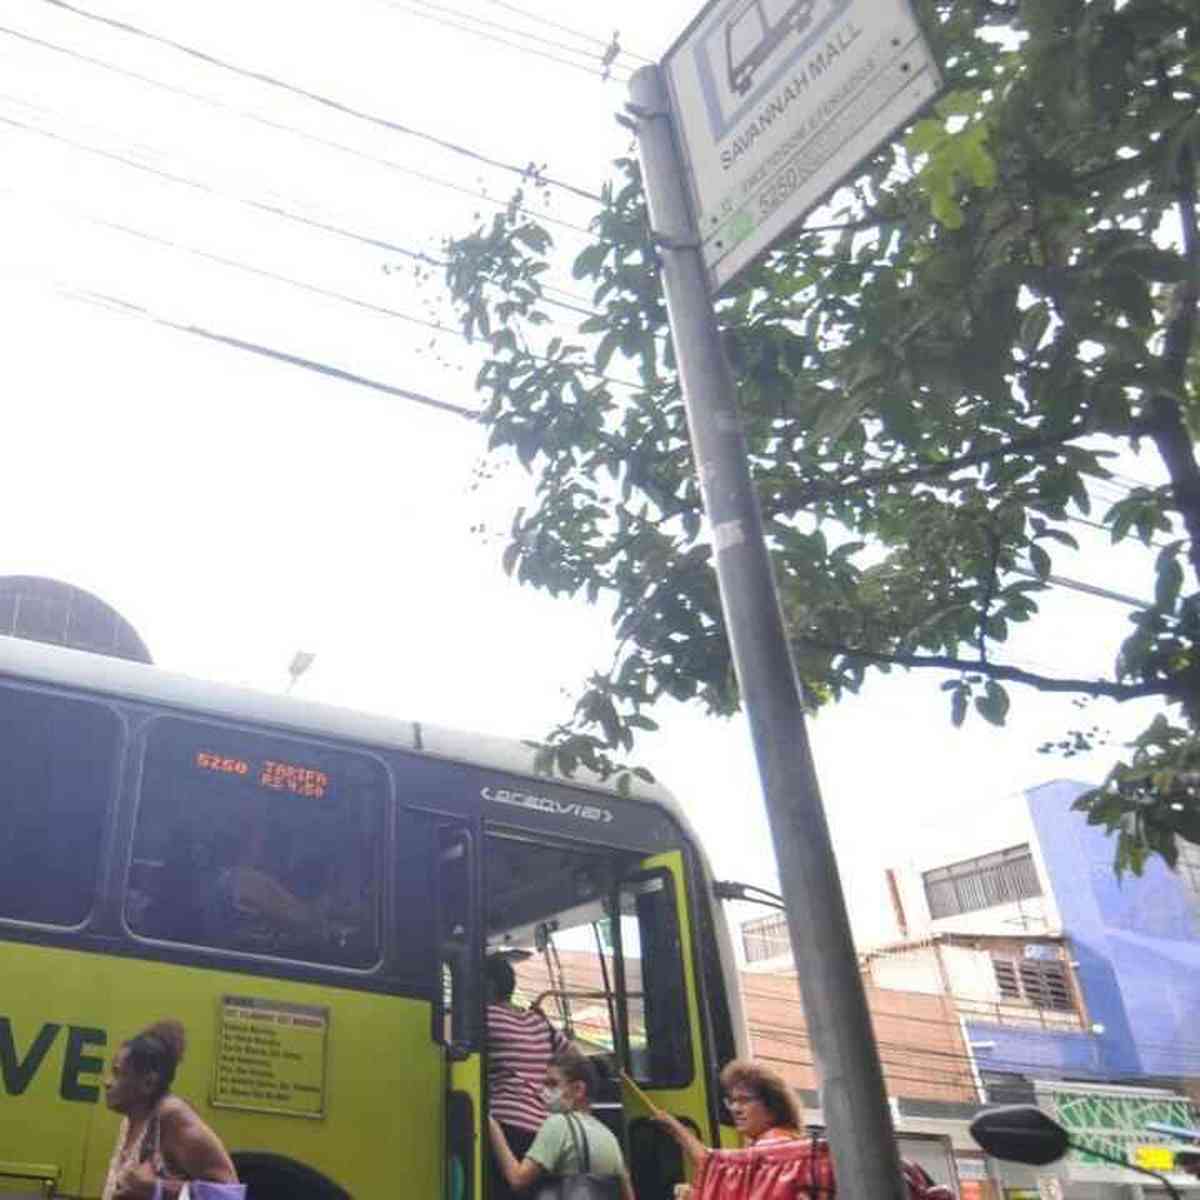 Passagem de ônibus em BH vai custar R$ 6 a partir de domingo - Politica -  Estado de Minas